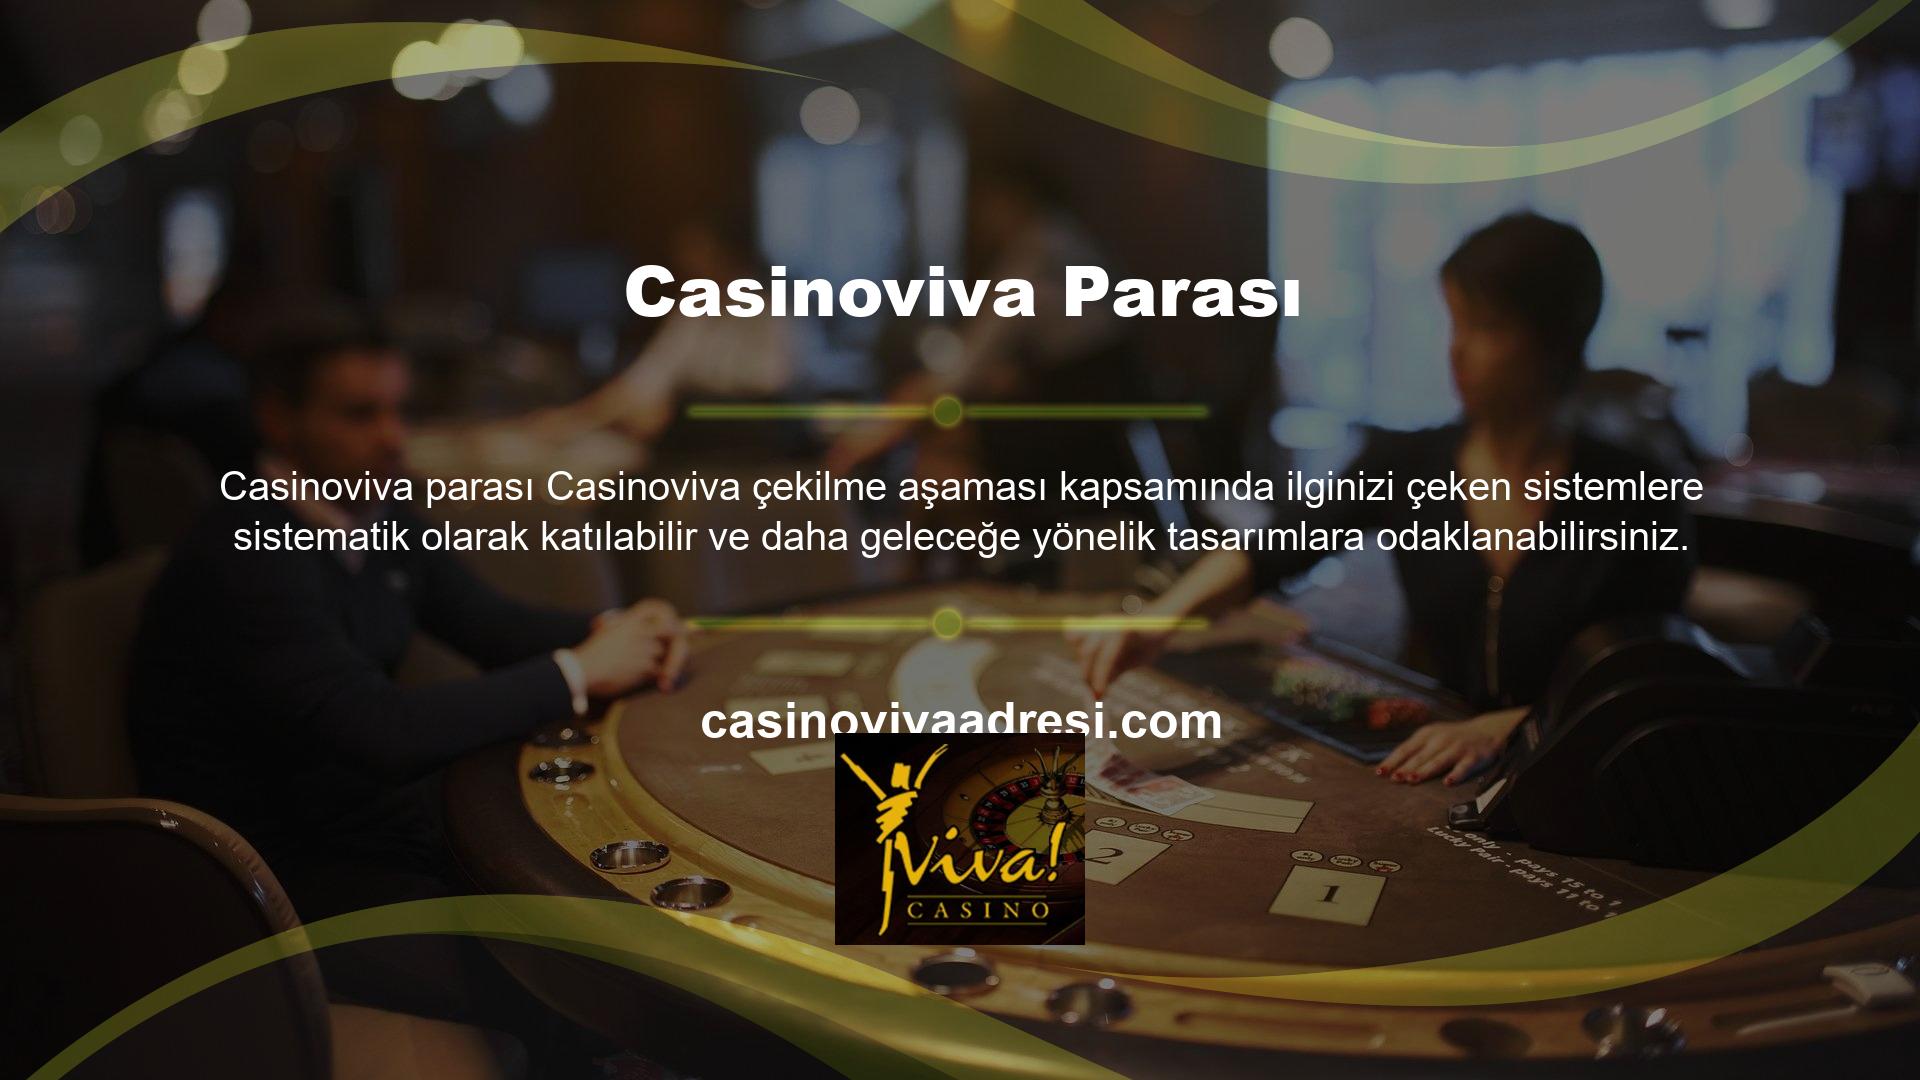 Casinoviva odaklanarak işlevsellik açısından daha donanımlı, güçlü, üst düzey ve sürekli hızlı etkileşimleri destekleyen bir oyun modeli oluşturabiliriz